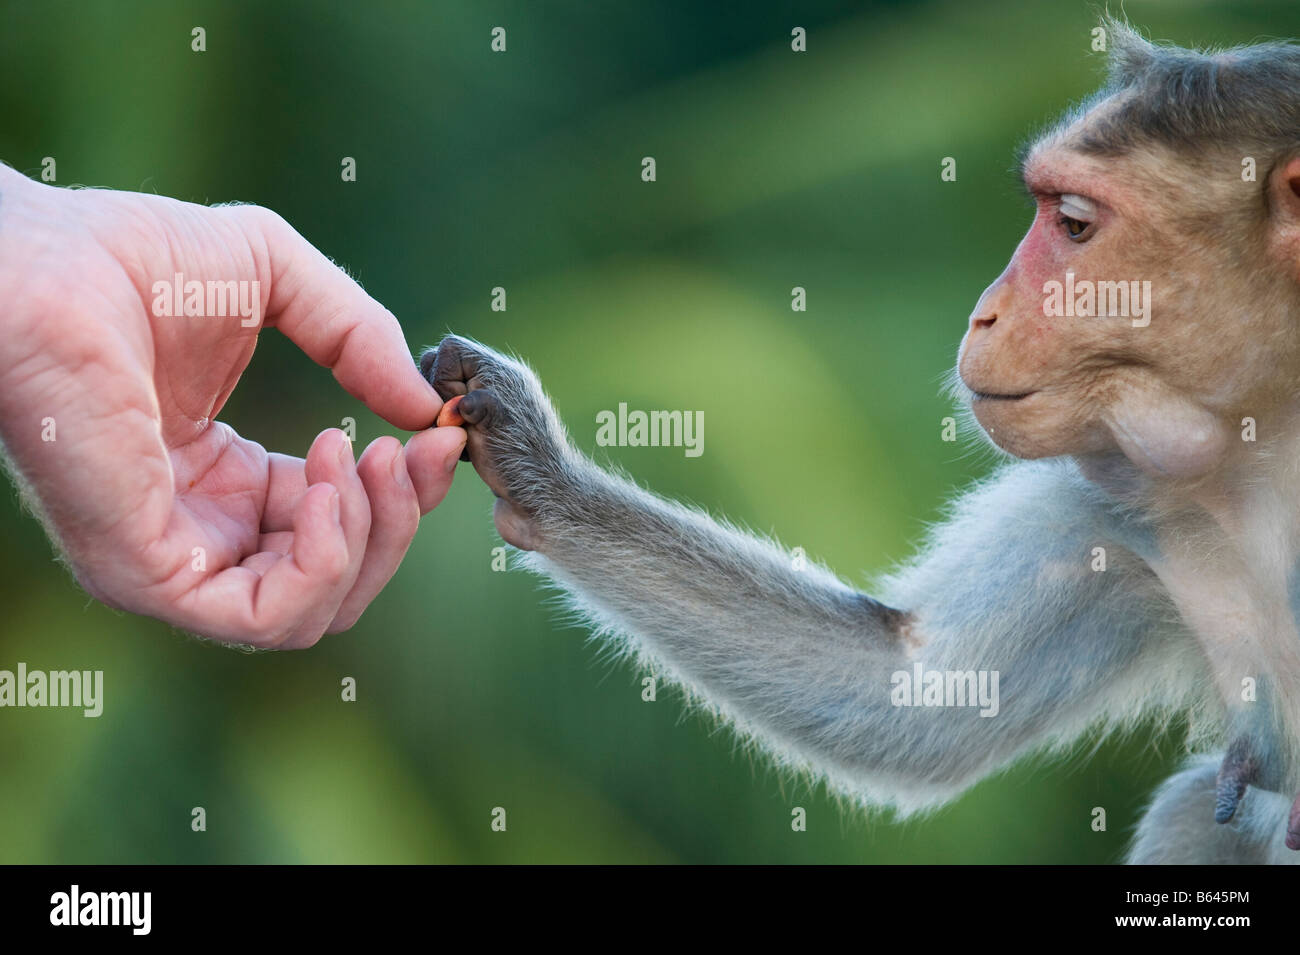 Macaca Radiata. Bonnet Macaque Affen Hand nehmend Erdnüsse aus einer menschlichen Hand. Andhra Pradesh, Indien Stockfoto